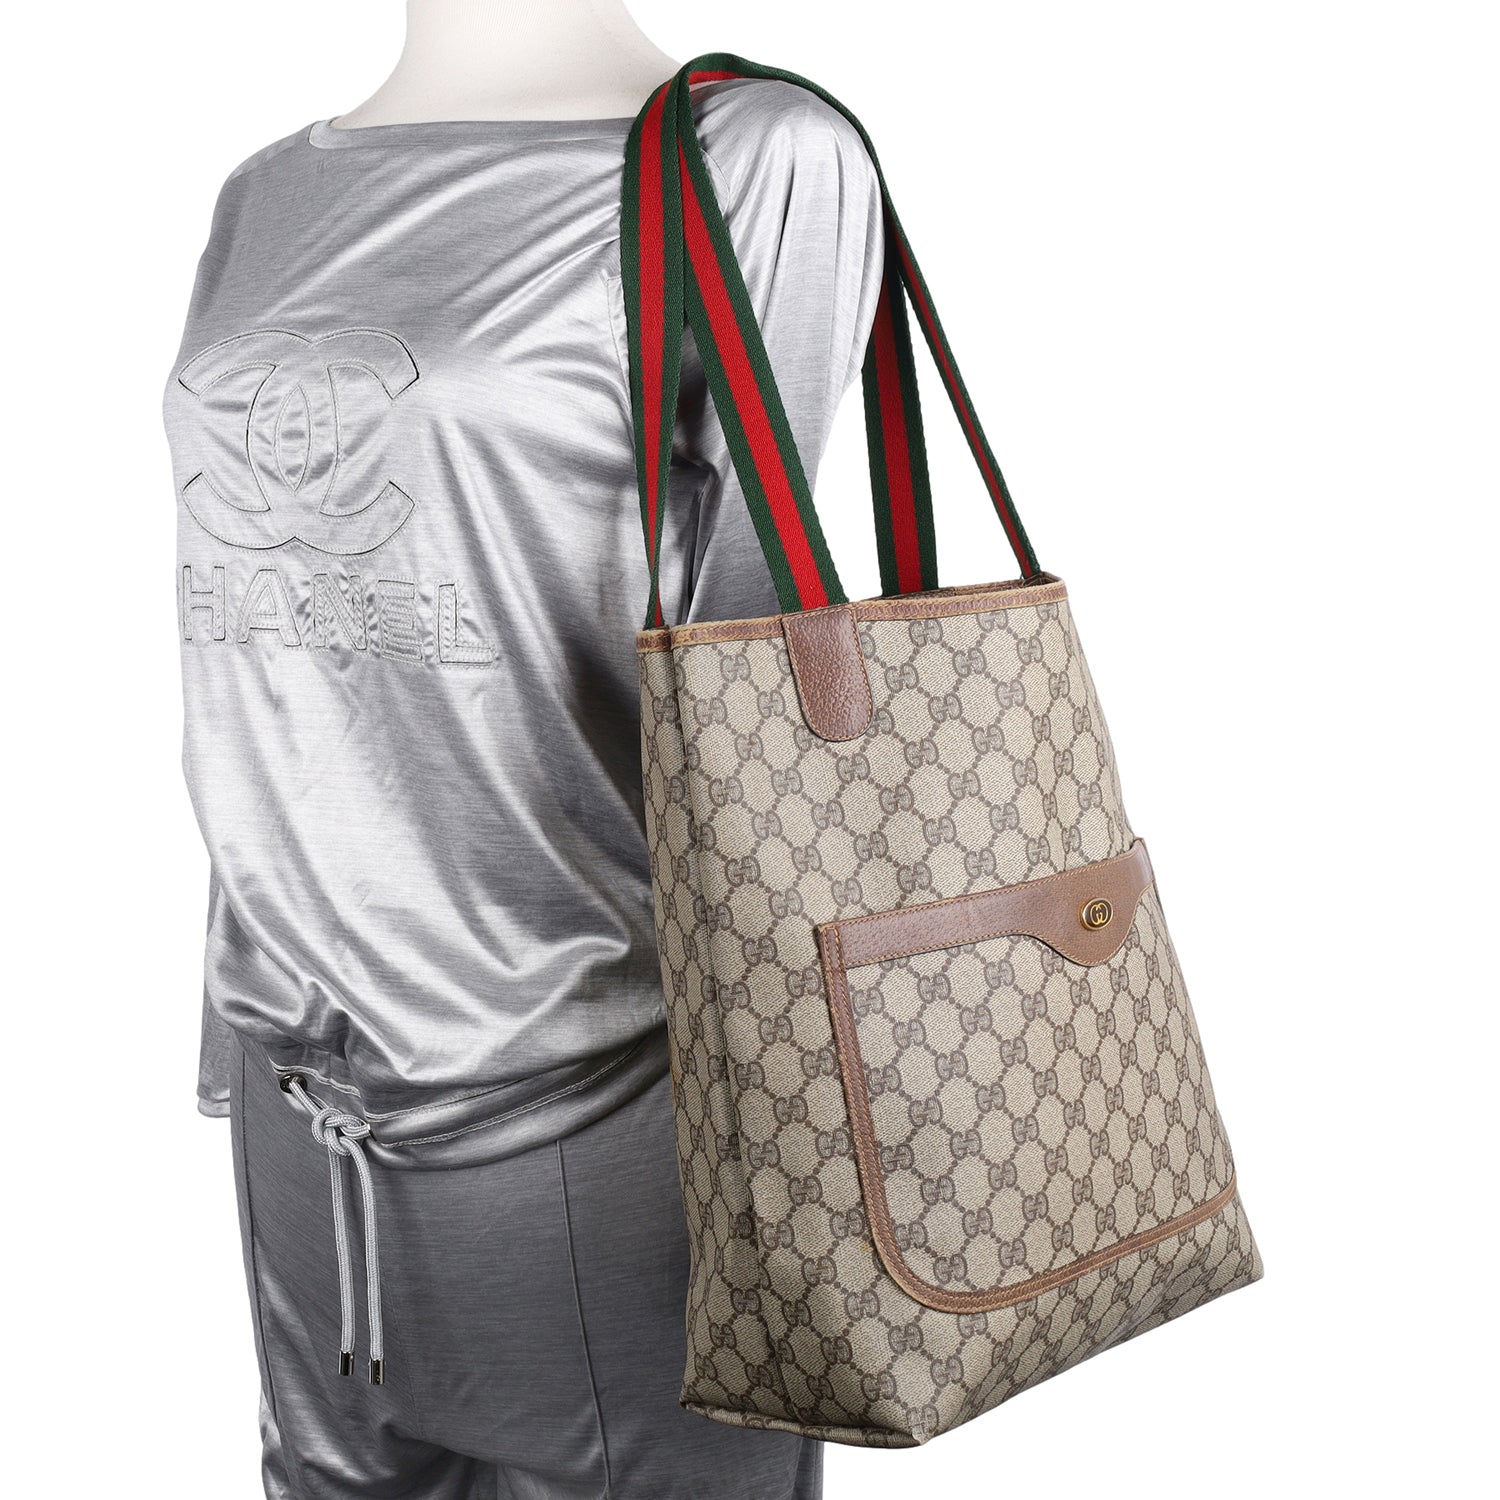 Gucci Vintage - GG Supreme Web Tote Bag - Brown - Leather Handbag